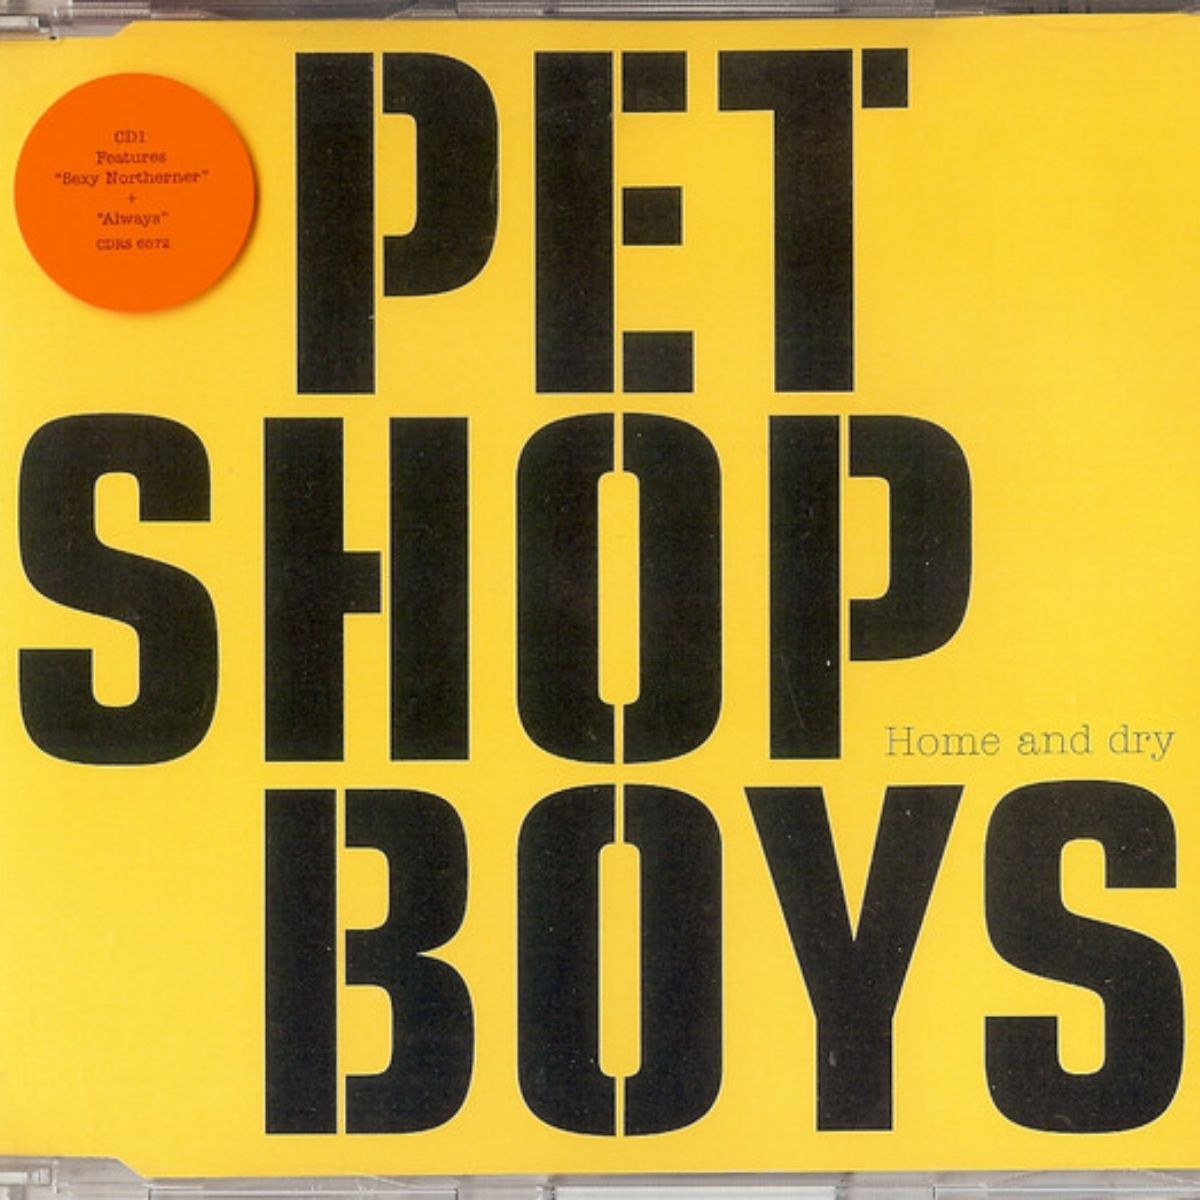 Couverture du single des Pet Shop Boys "Home and Dry". 